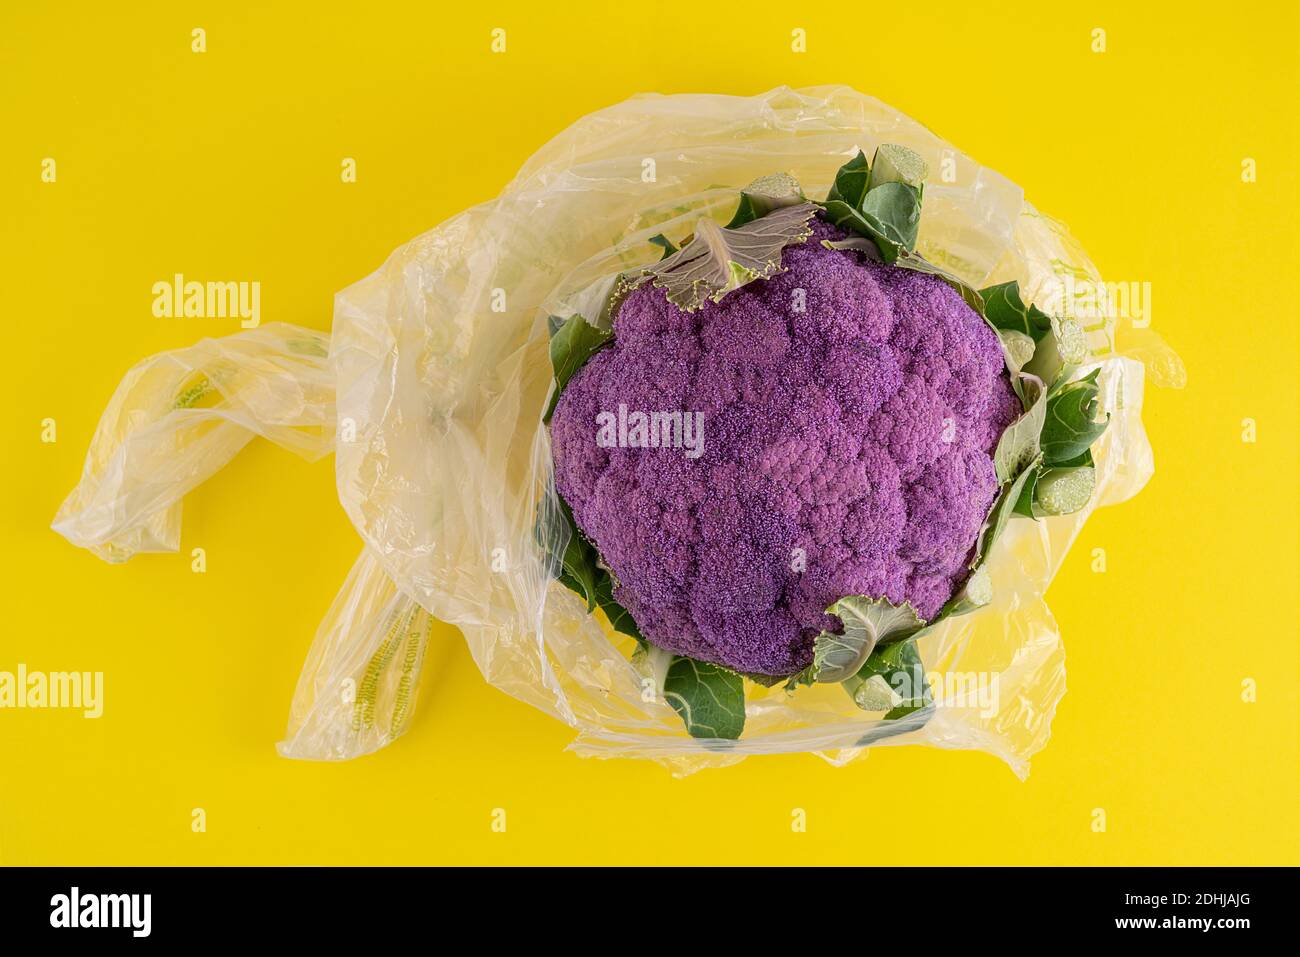 un chou-fleur violet dans un sac sur une surface jaune Banque D'Images